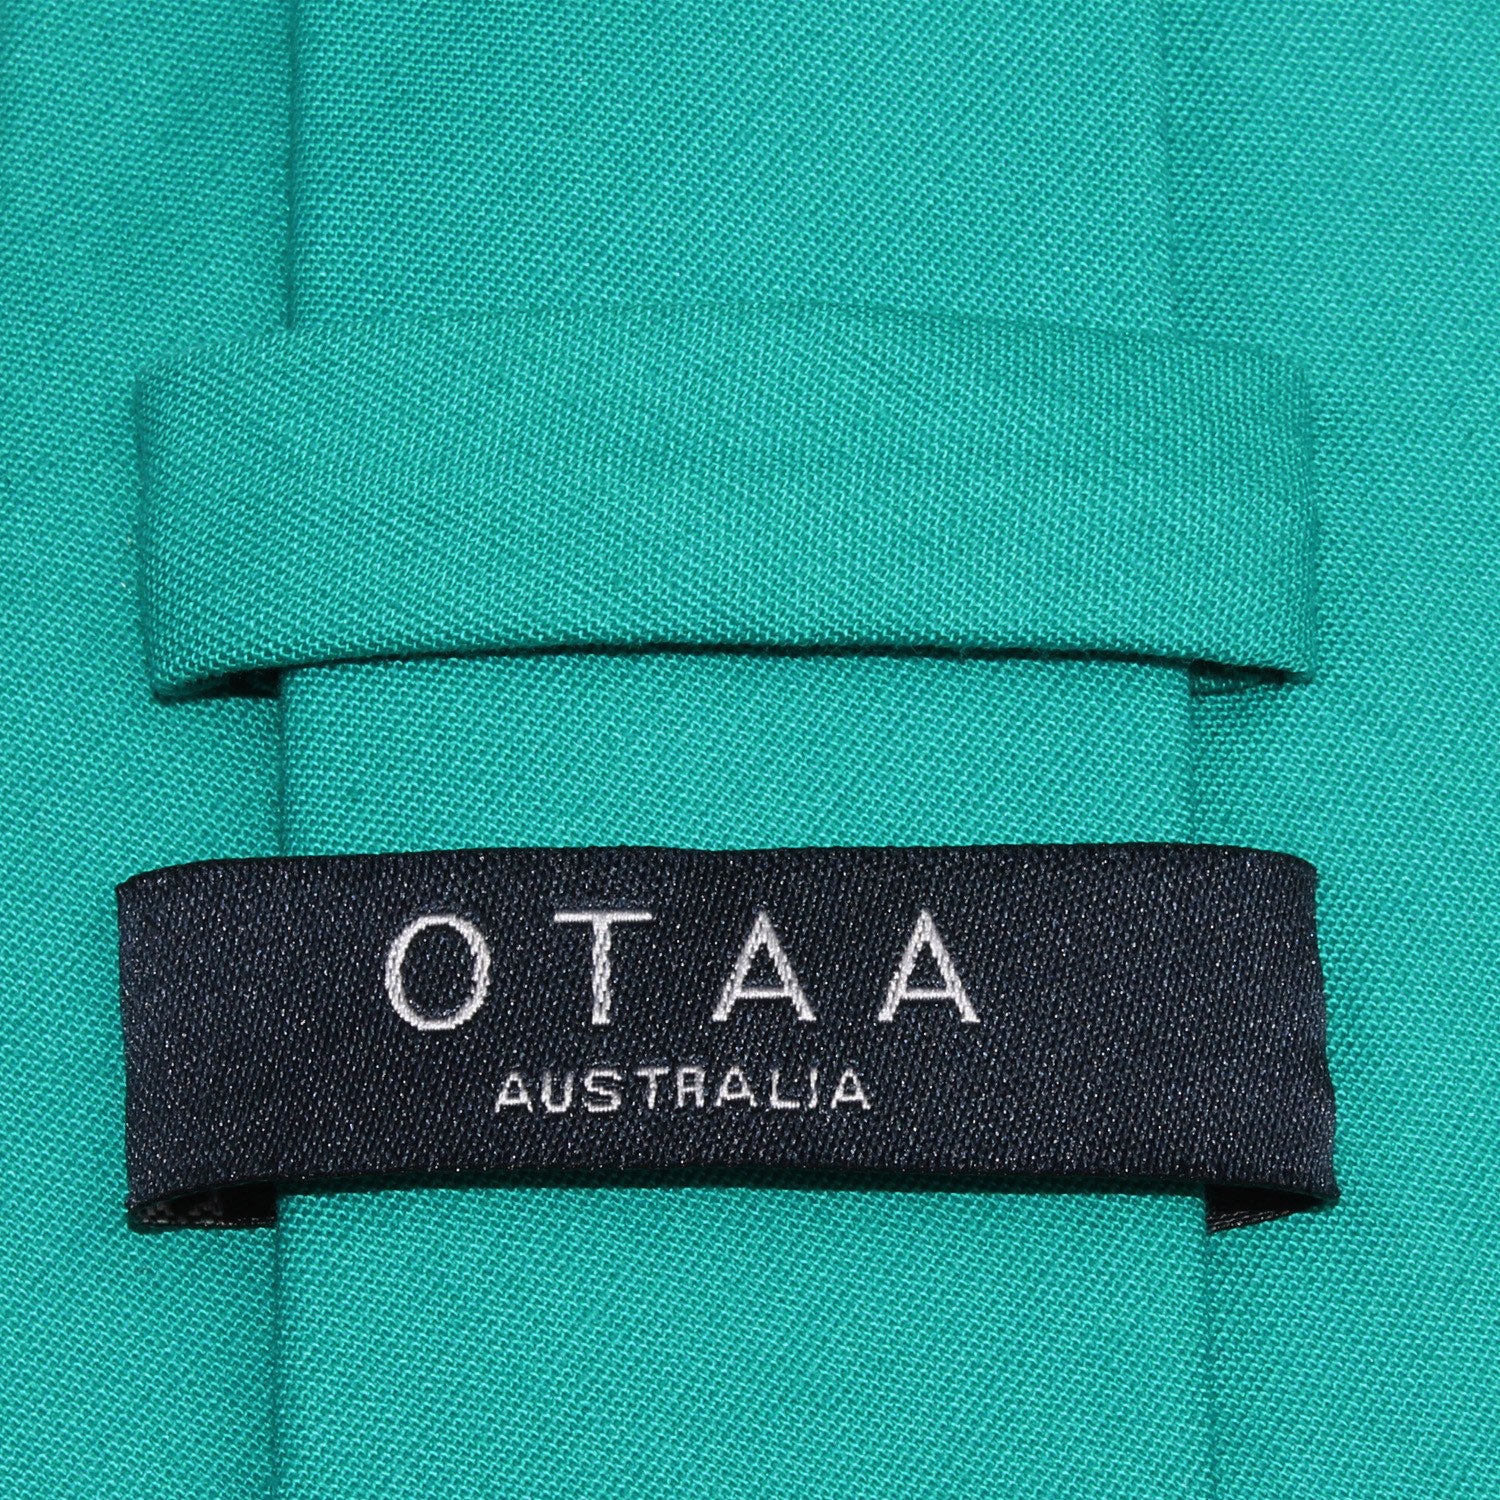 Green Teal Cotton Skinny Tie OTAA Australia